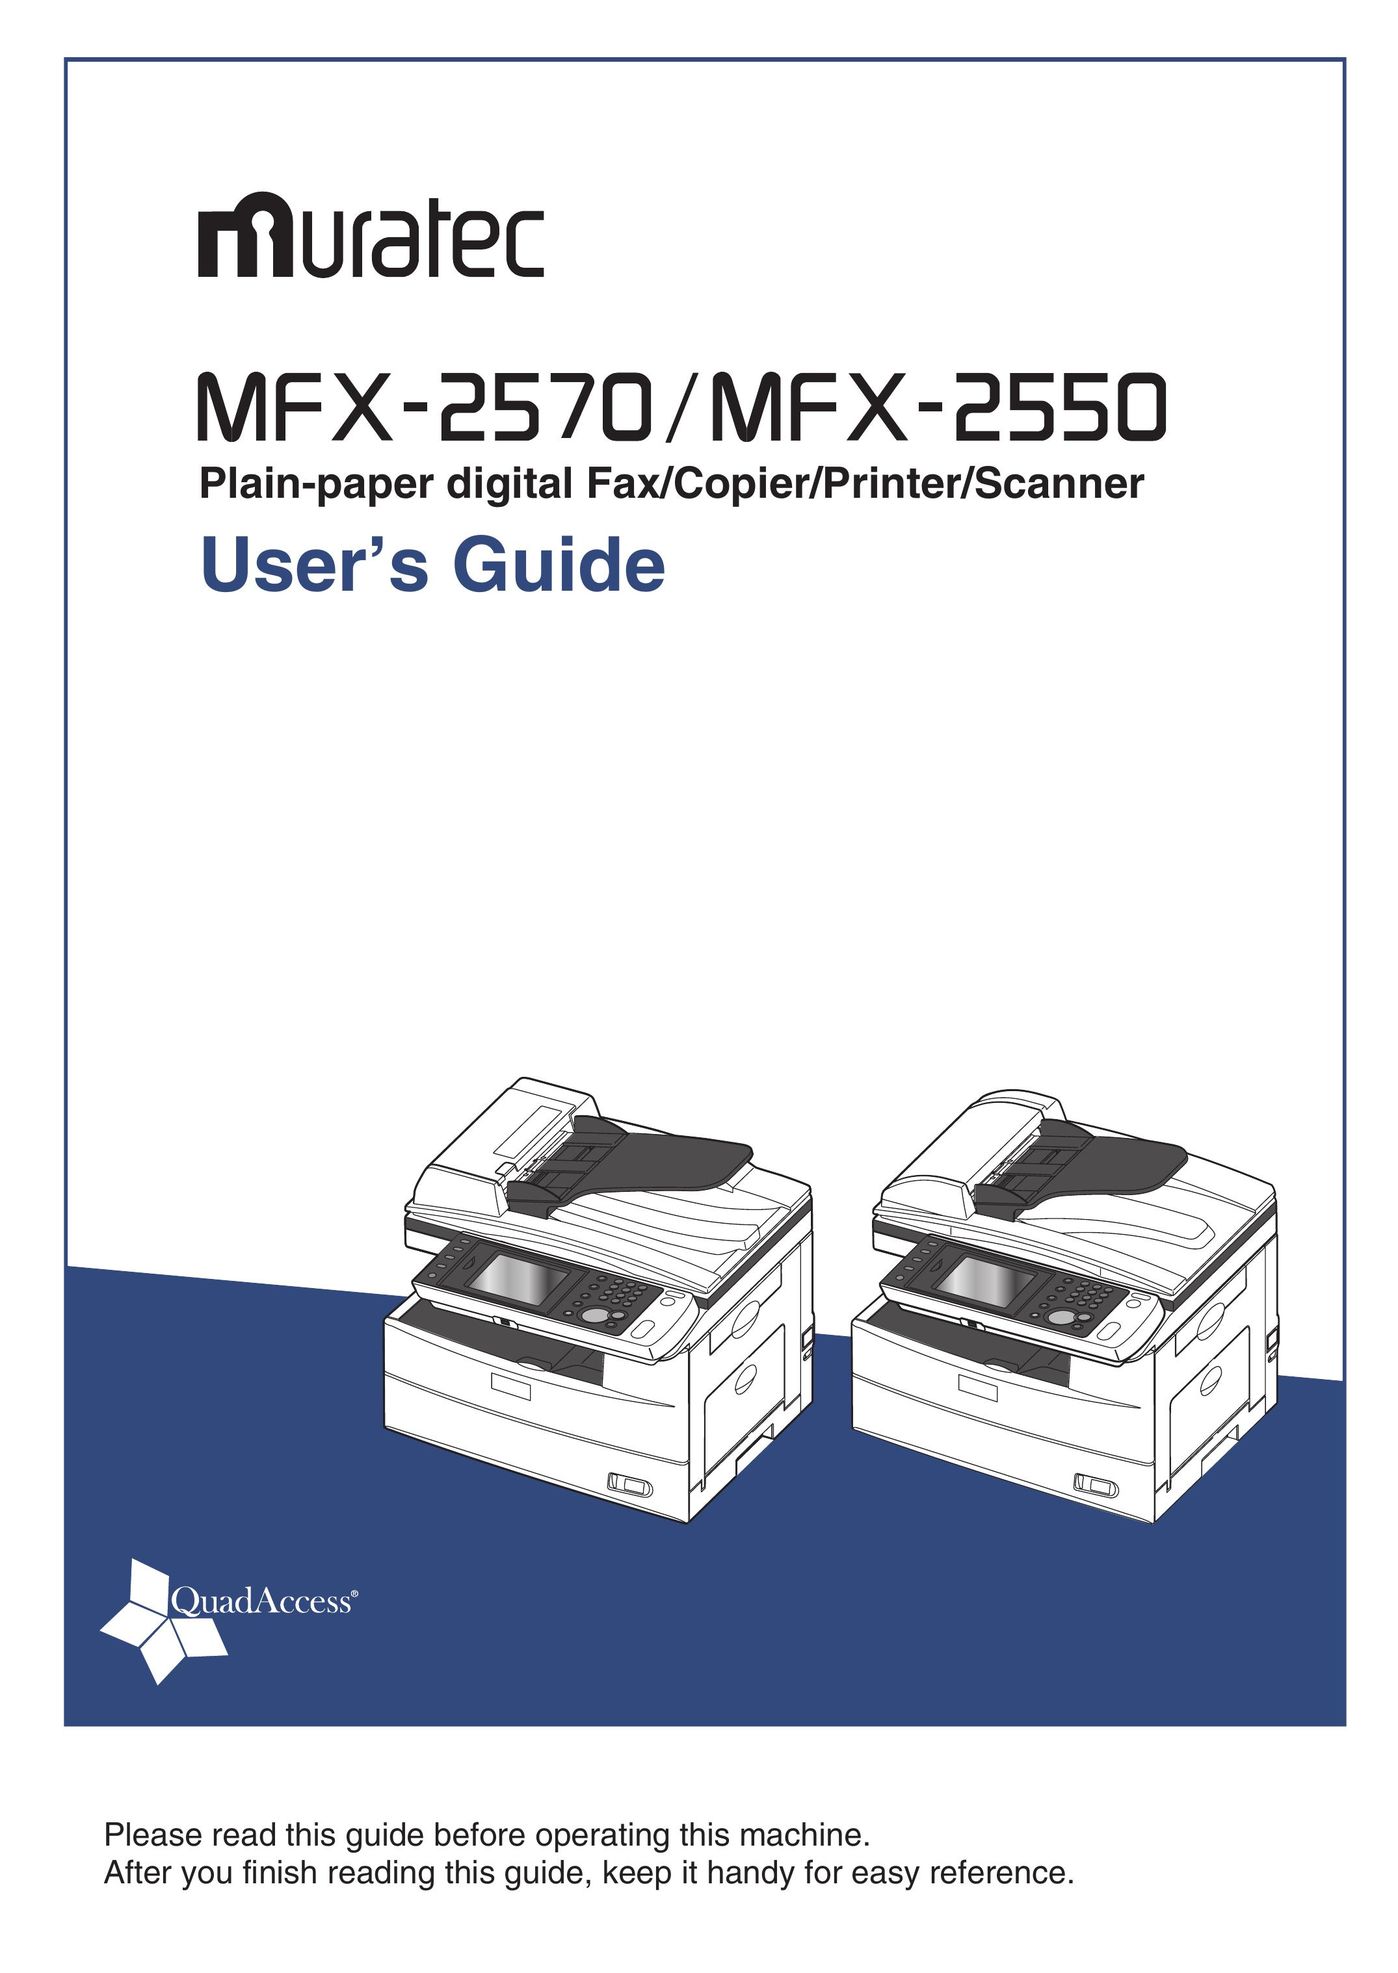 Muratec MFX-2570 All in One Printer User Manual